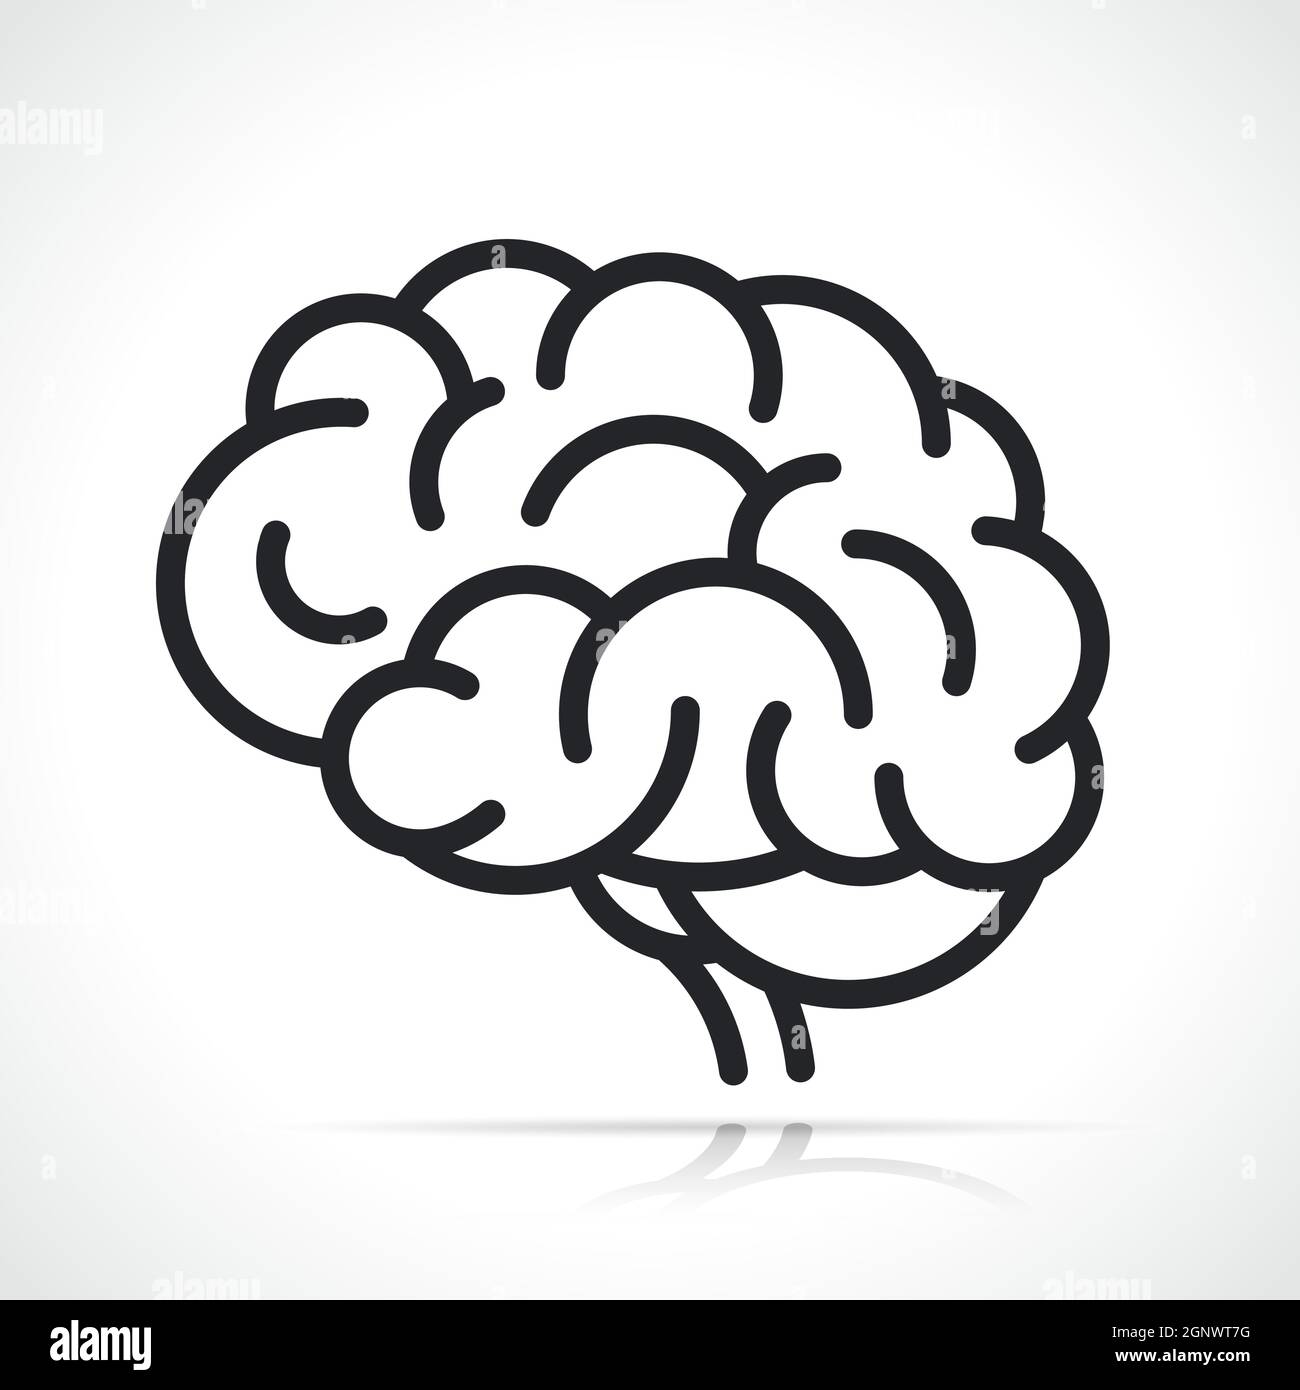 Icona di isolamento del cervello umano vettoriale Illustrazione Vettoriale